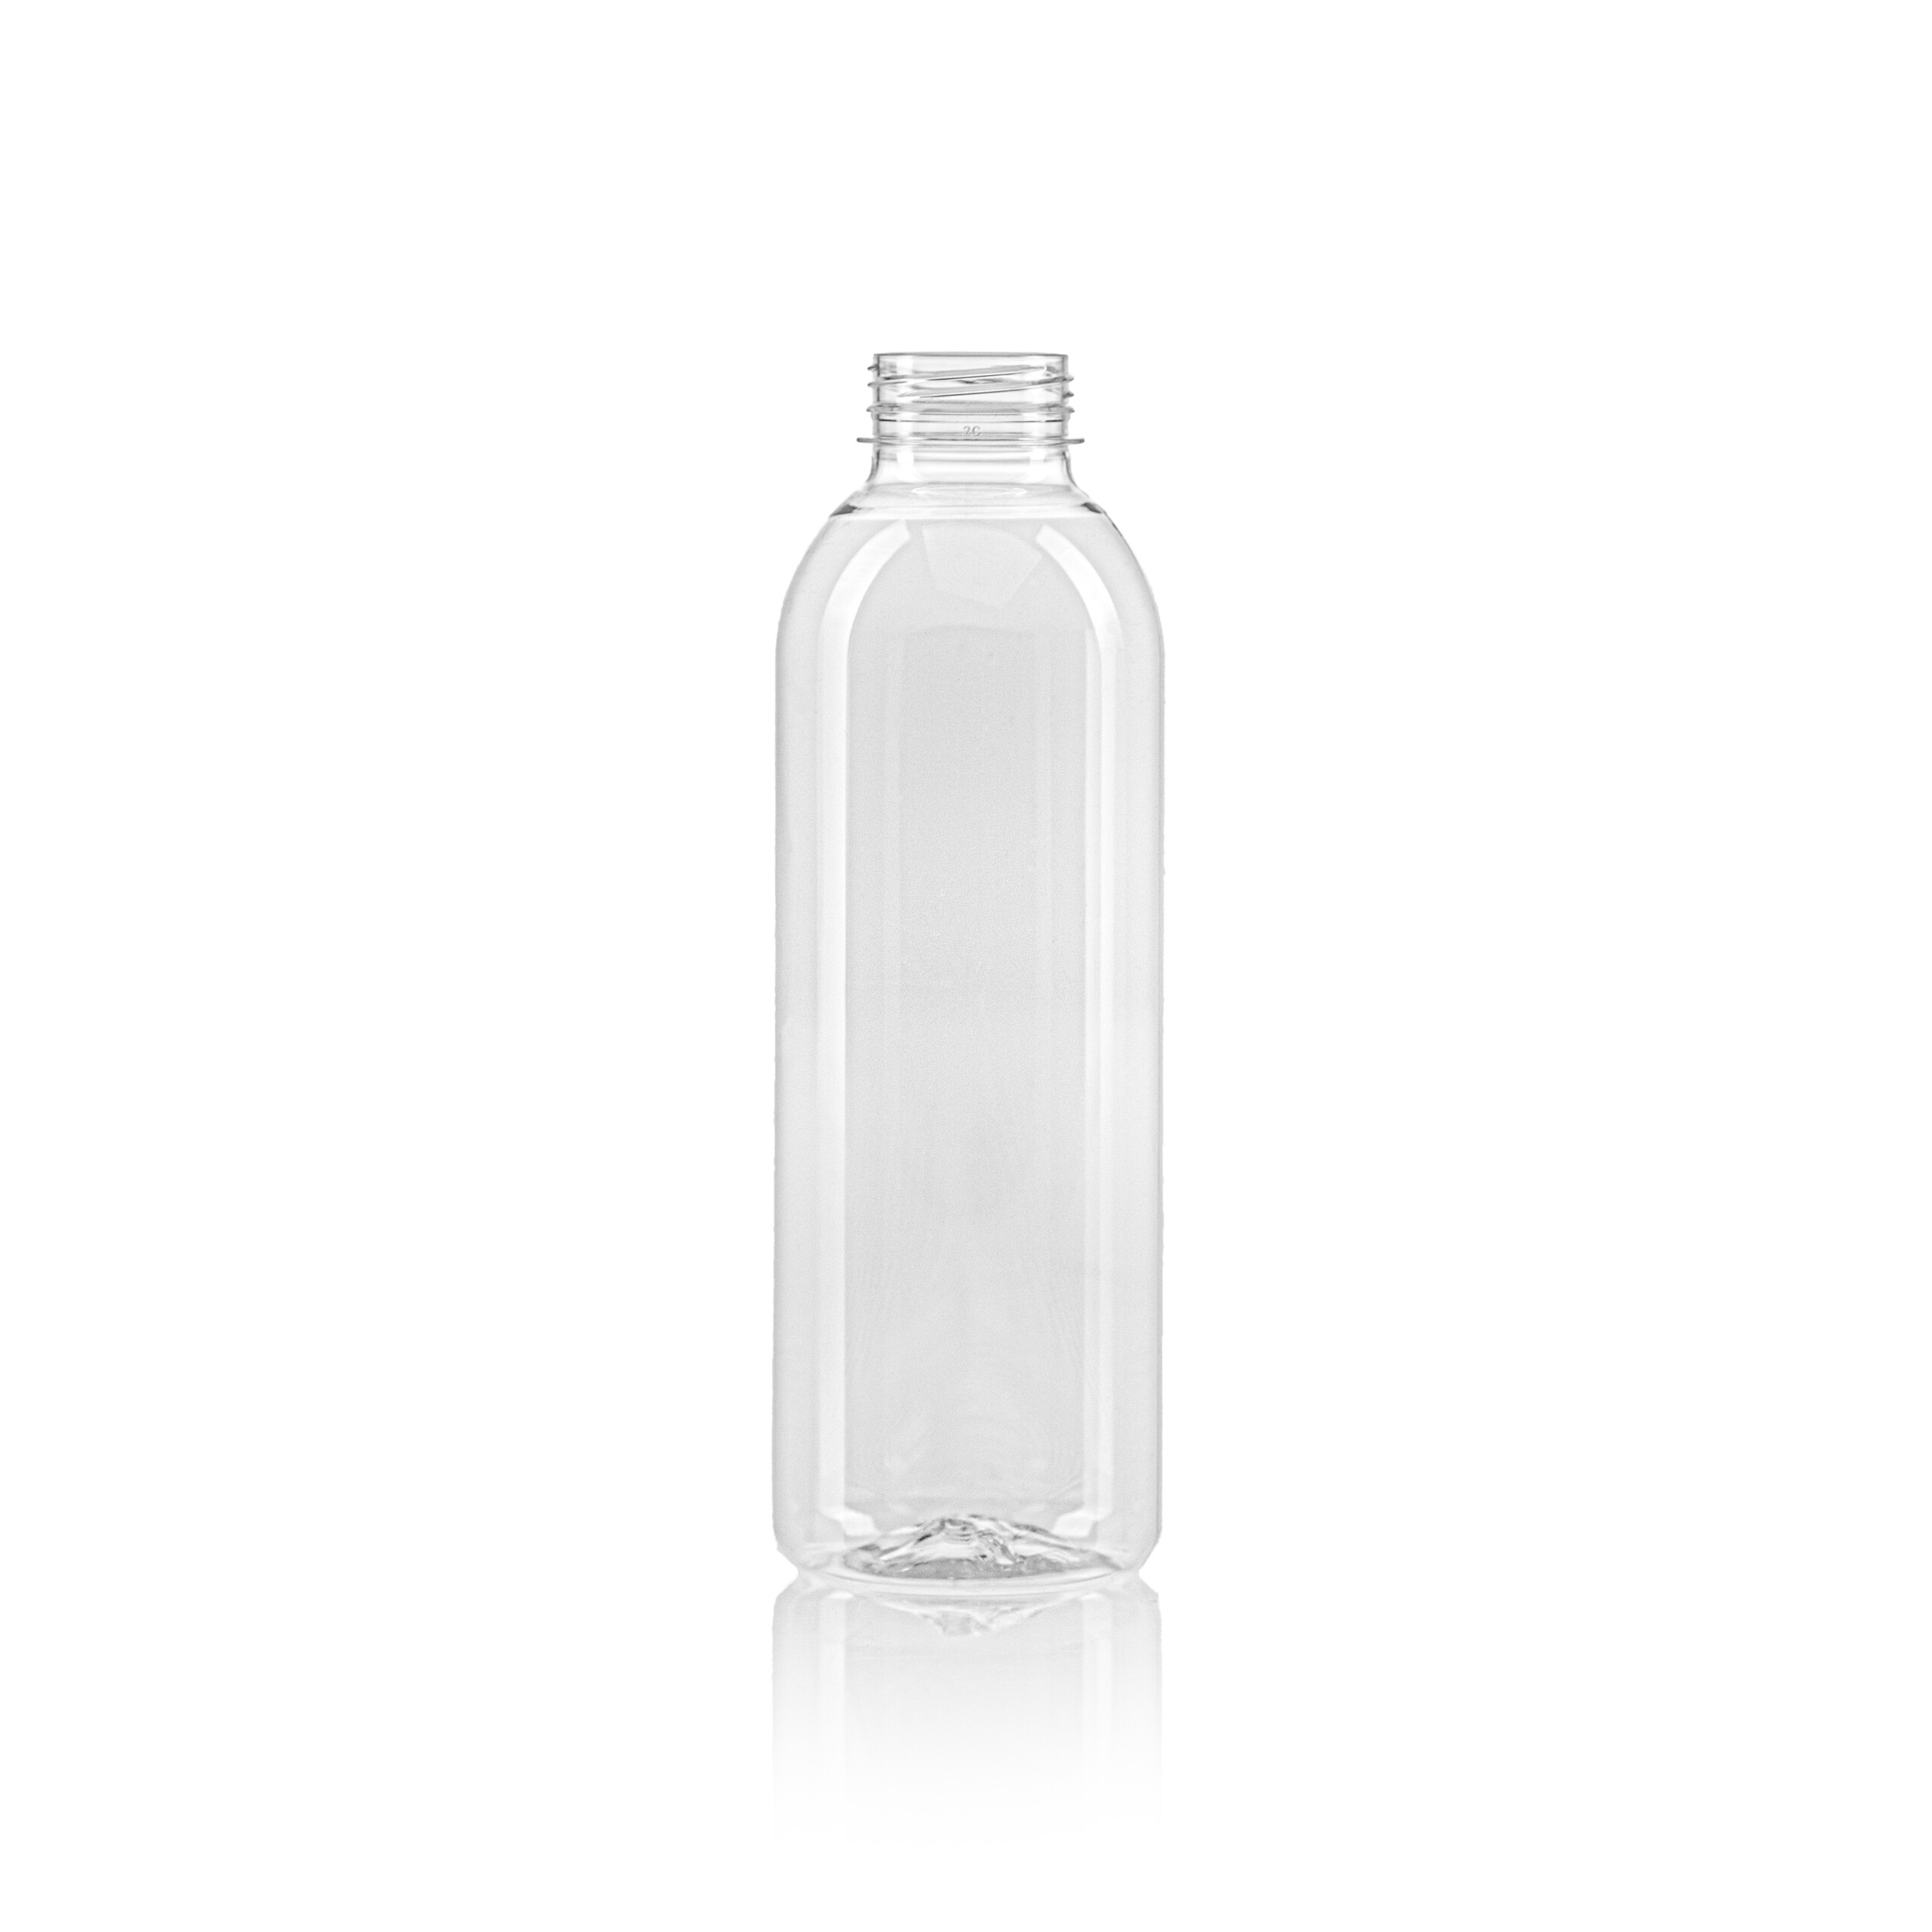 PET juice bottle round 750ml scaled Bottles